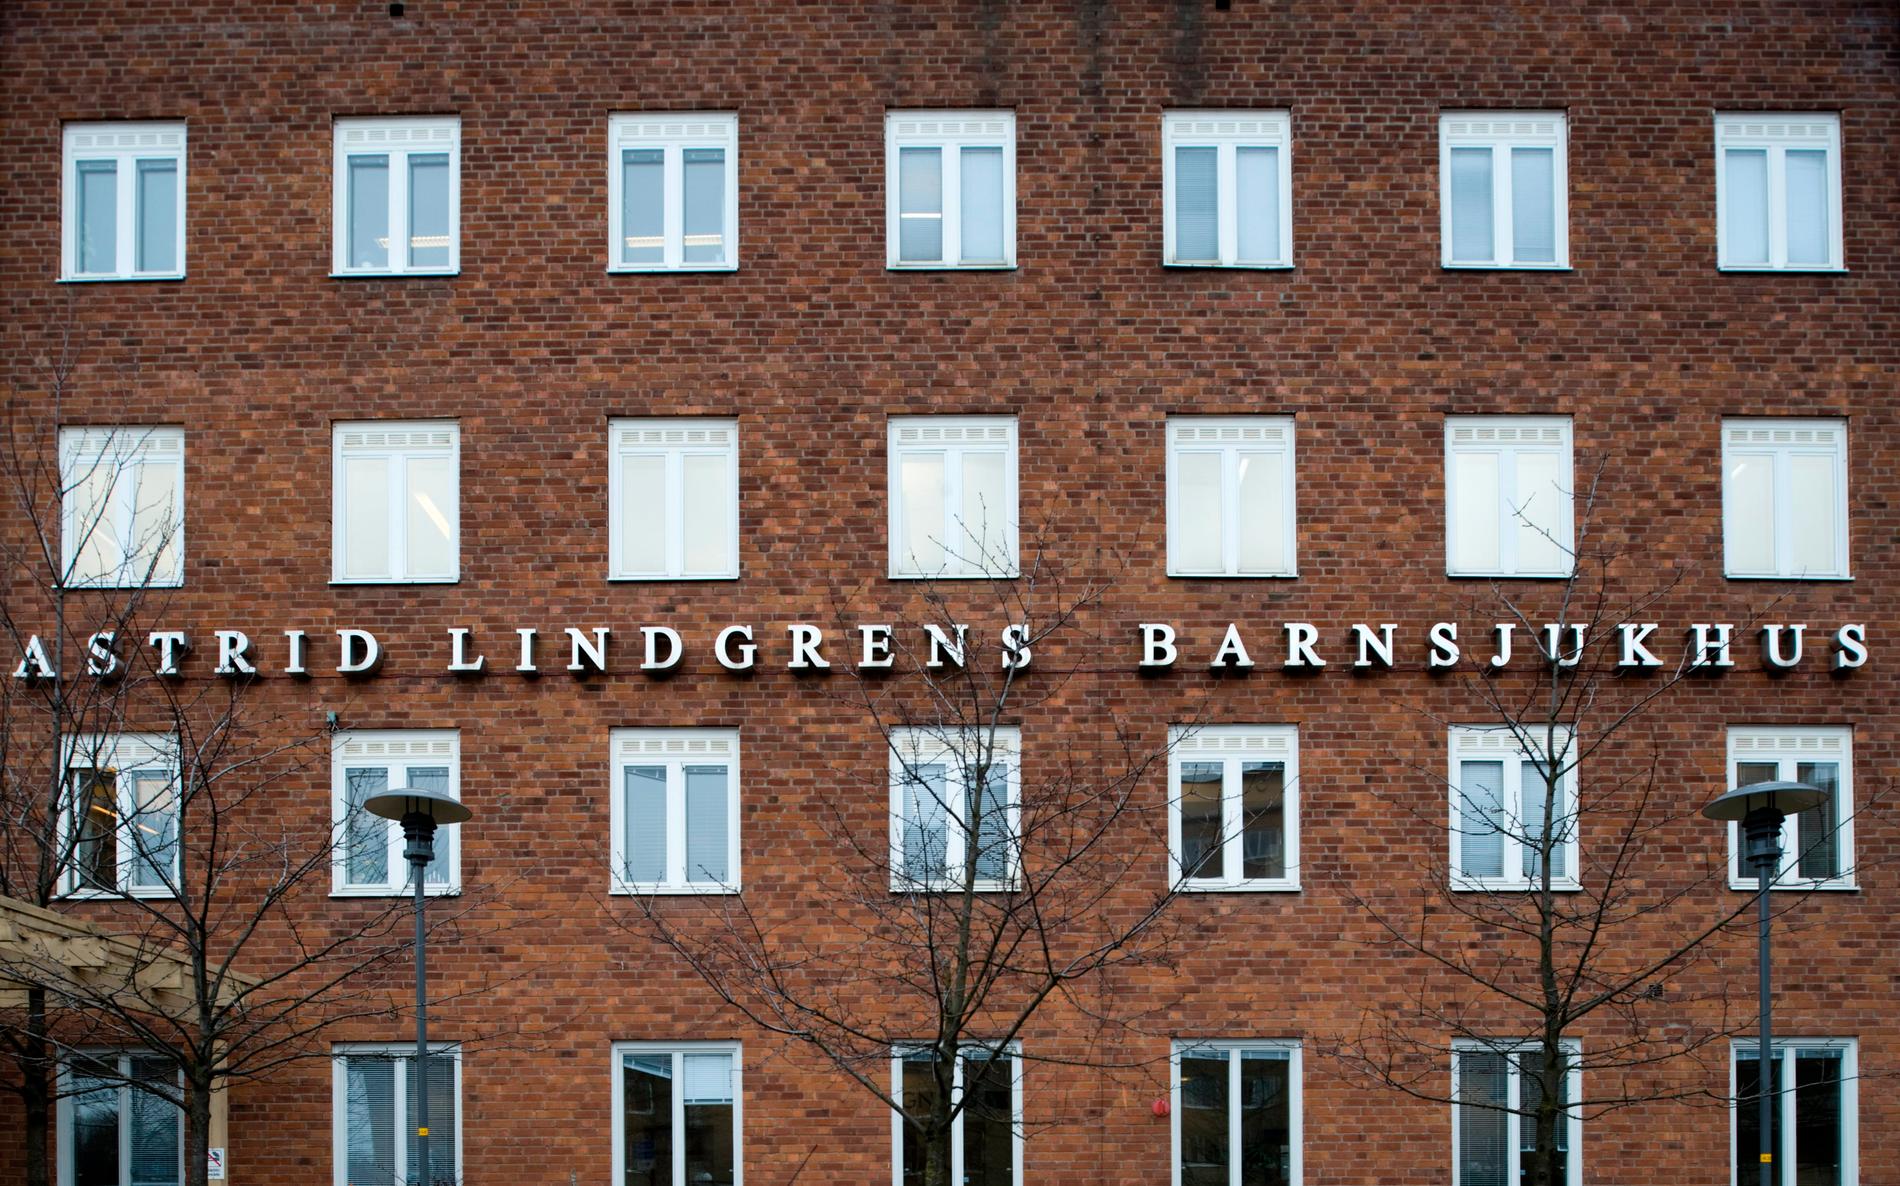 Riktlinjerna för behandling av unga med könsdysfori har ändrats vid Astrid Lindgrens barnsjukhus, som är en del av Karolinska universitetssjukhuset. Arkivbild.